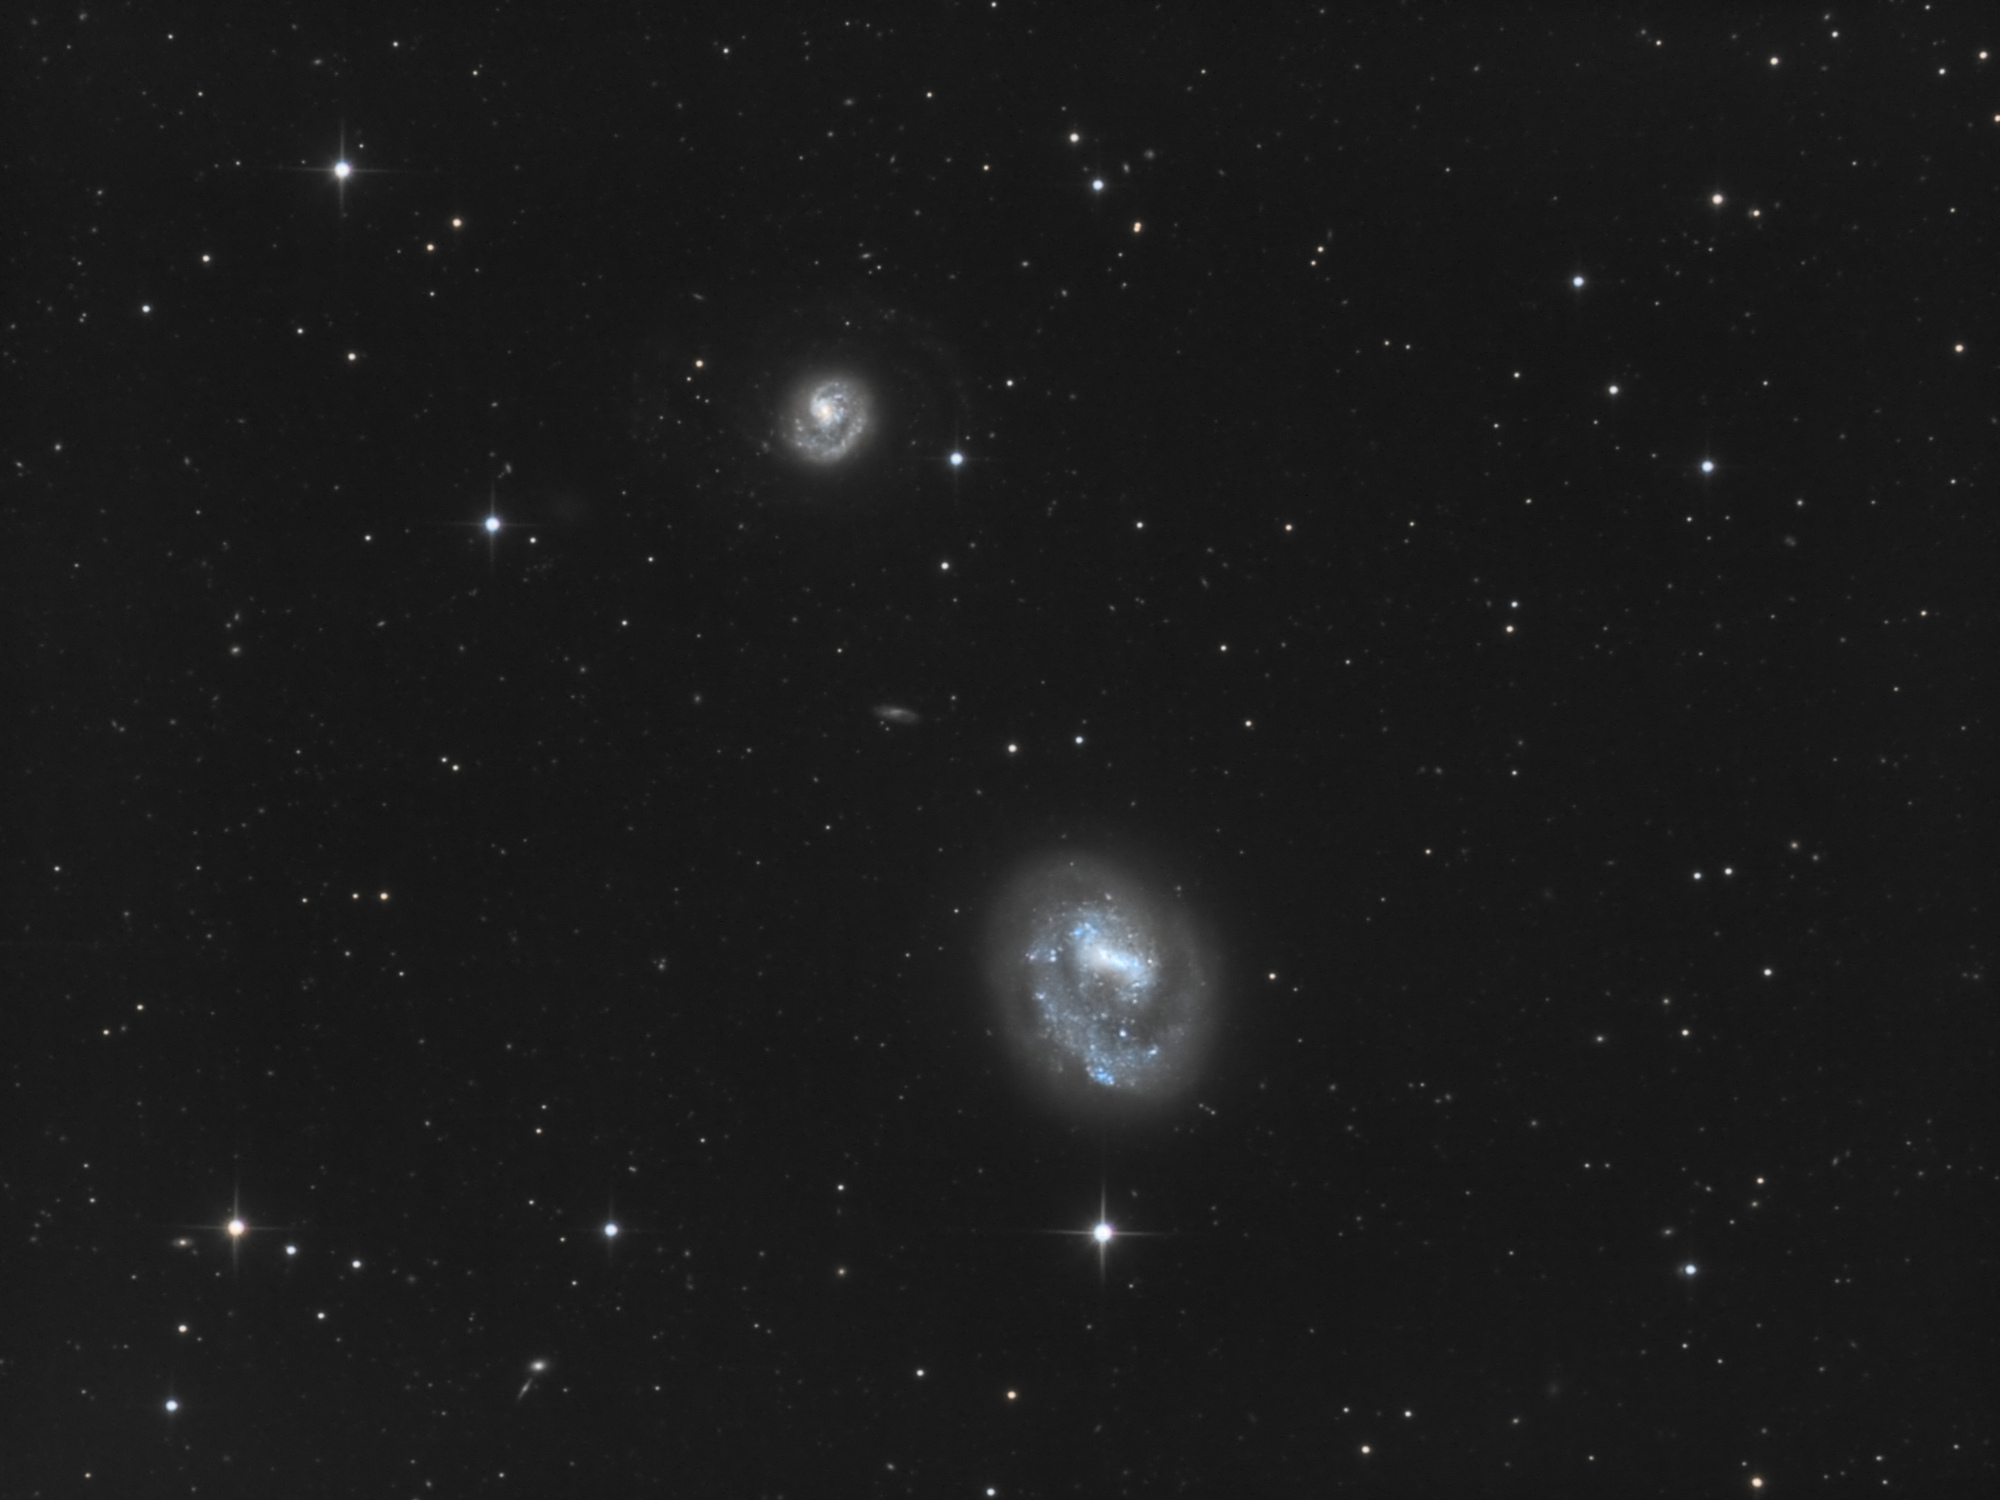 NGC_4618_4625_LRVB.thumb.jpg.1a2cff64fd60c3f504b30baa32607d74.jpg